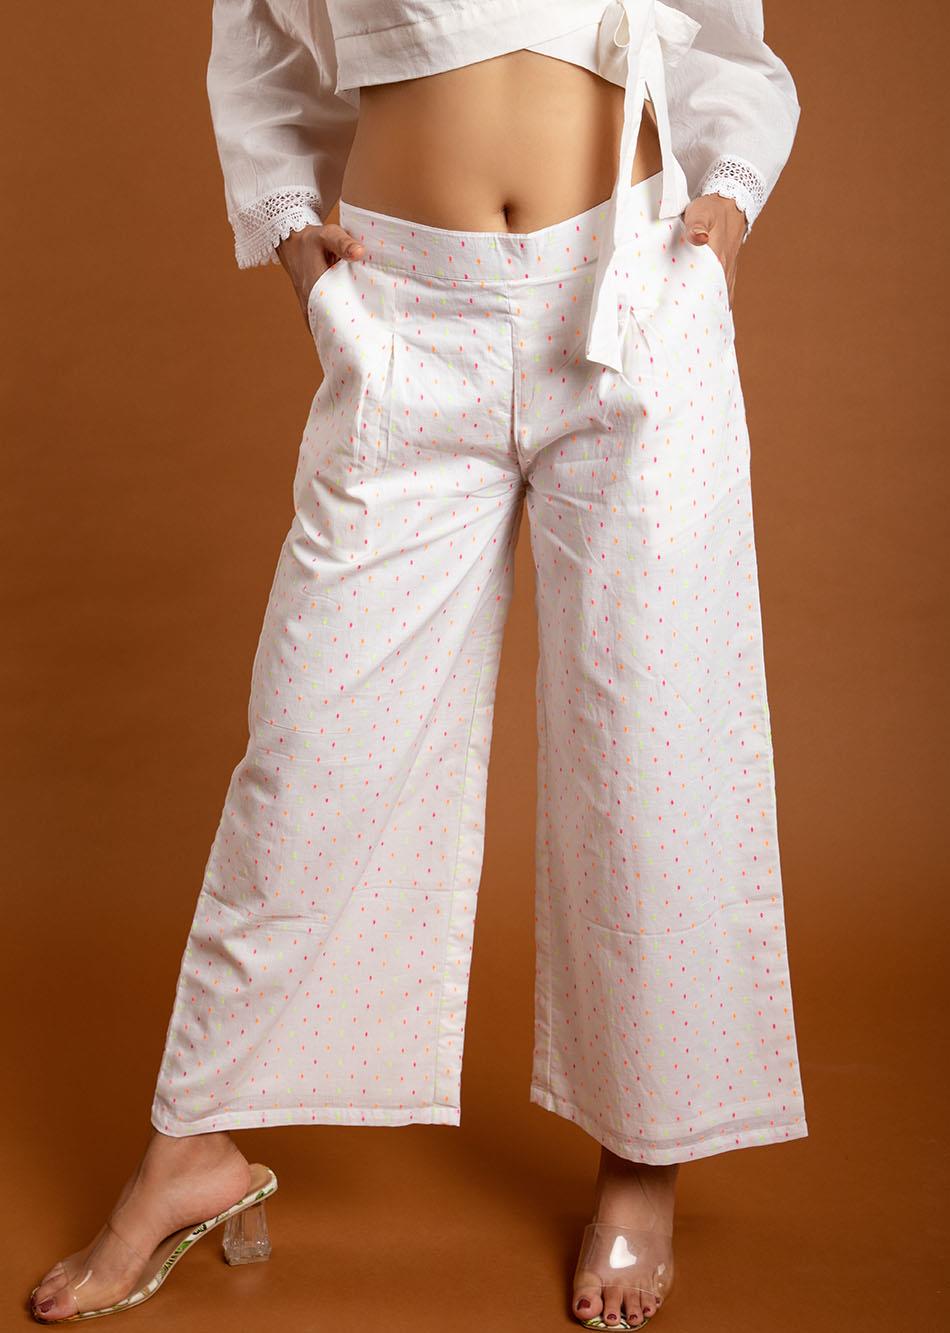 EASY WHITE PANTS By Jovi Fashion